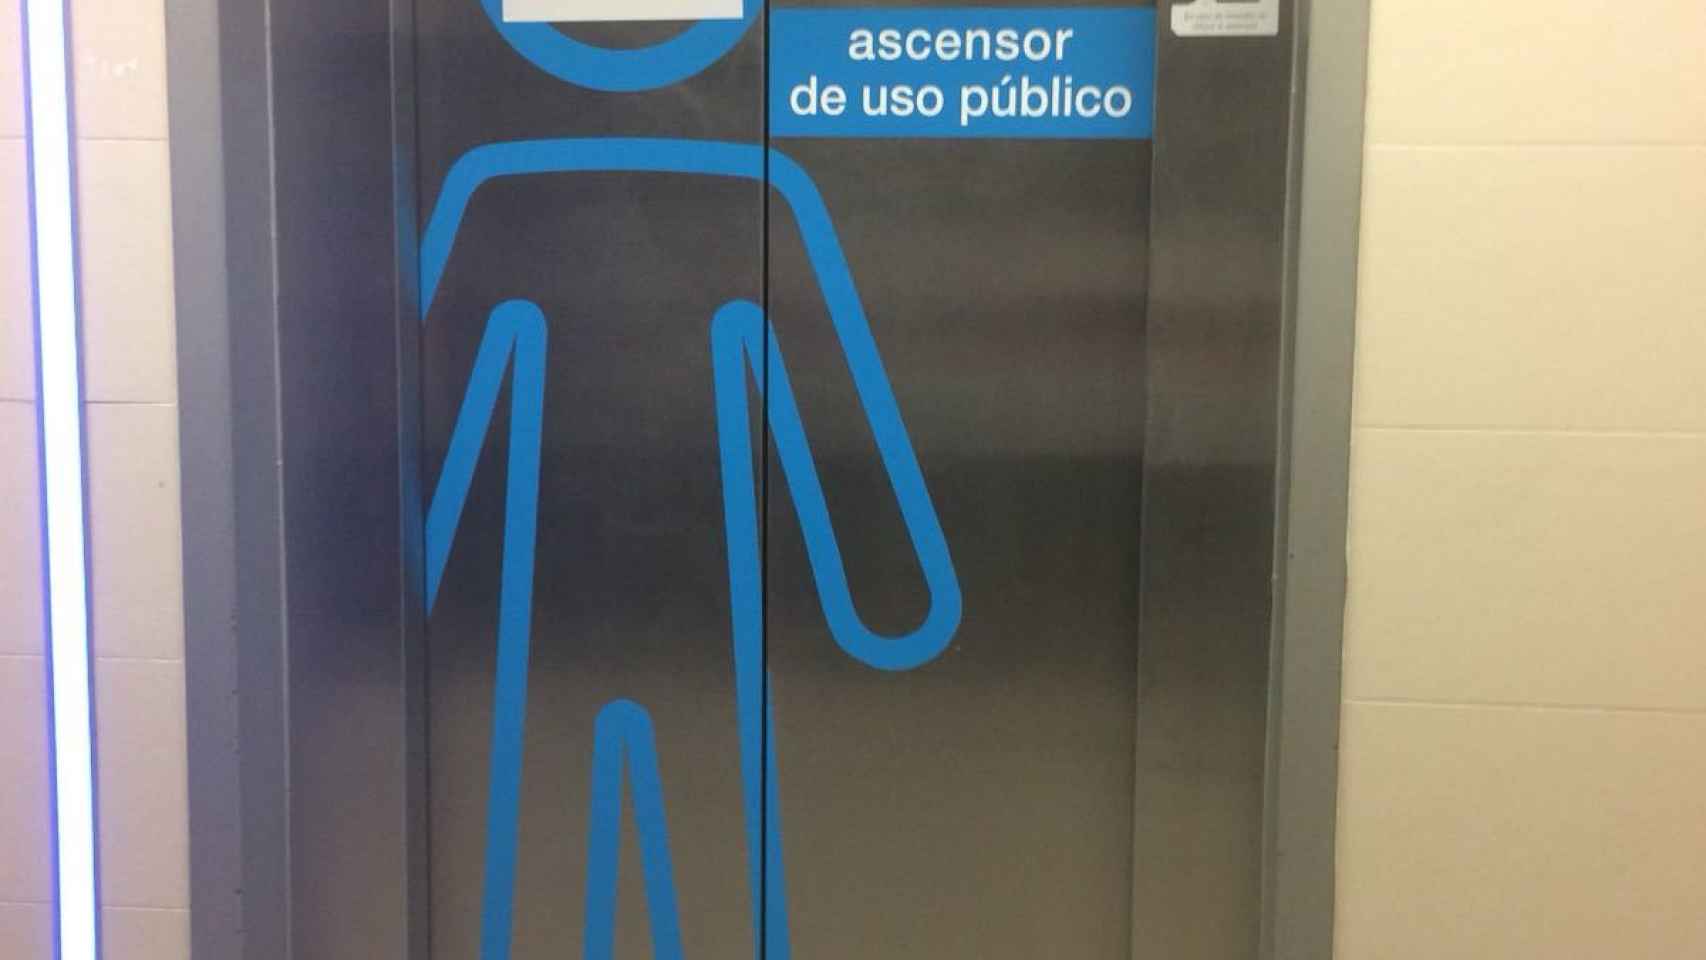 El ascensor 54 del Hospital La Paz permanece cerrado.